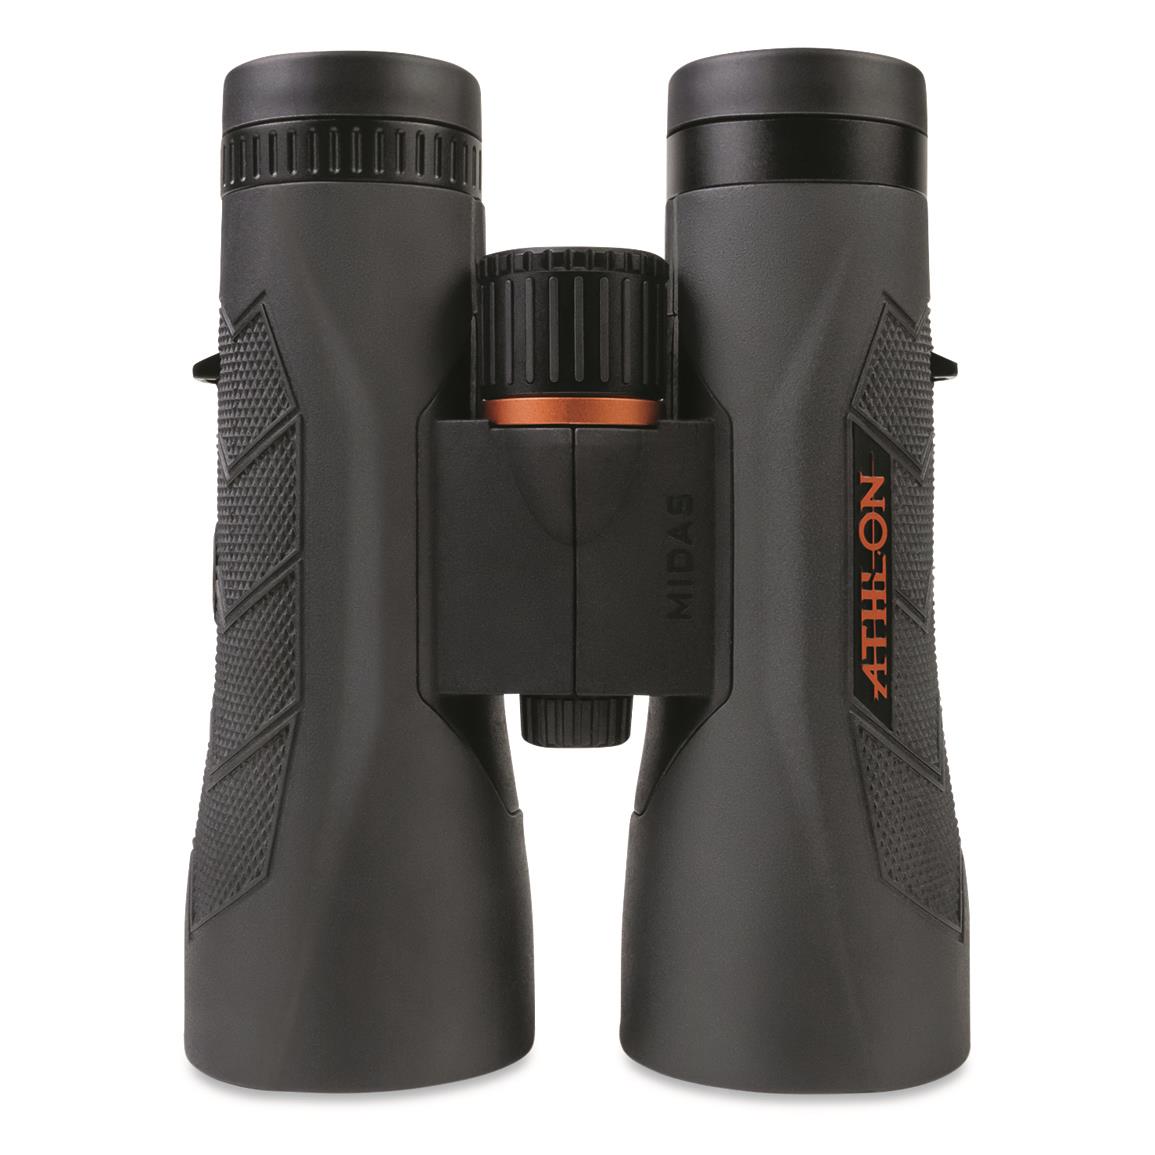 Athlon Midas G2 UHD 12x50mm Binoculars